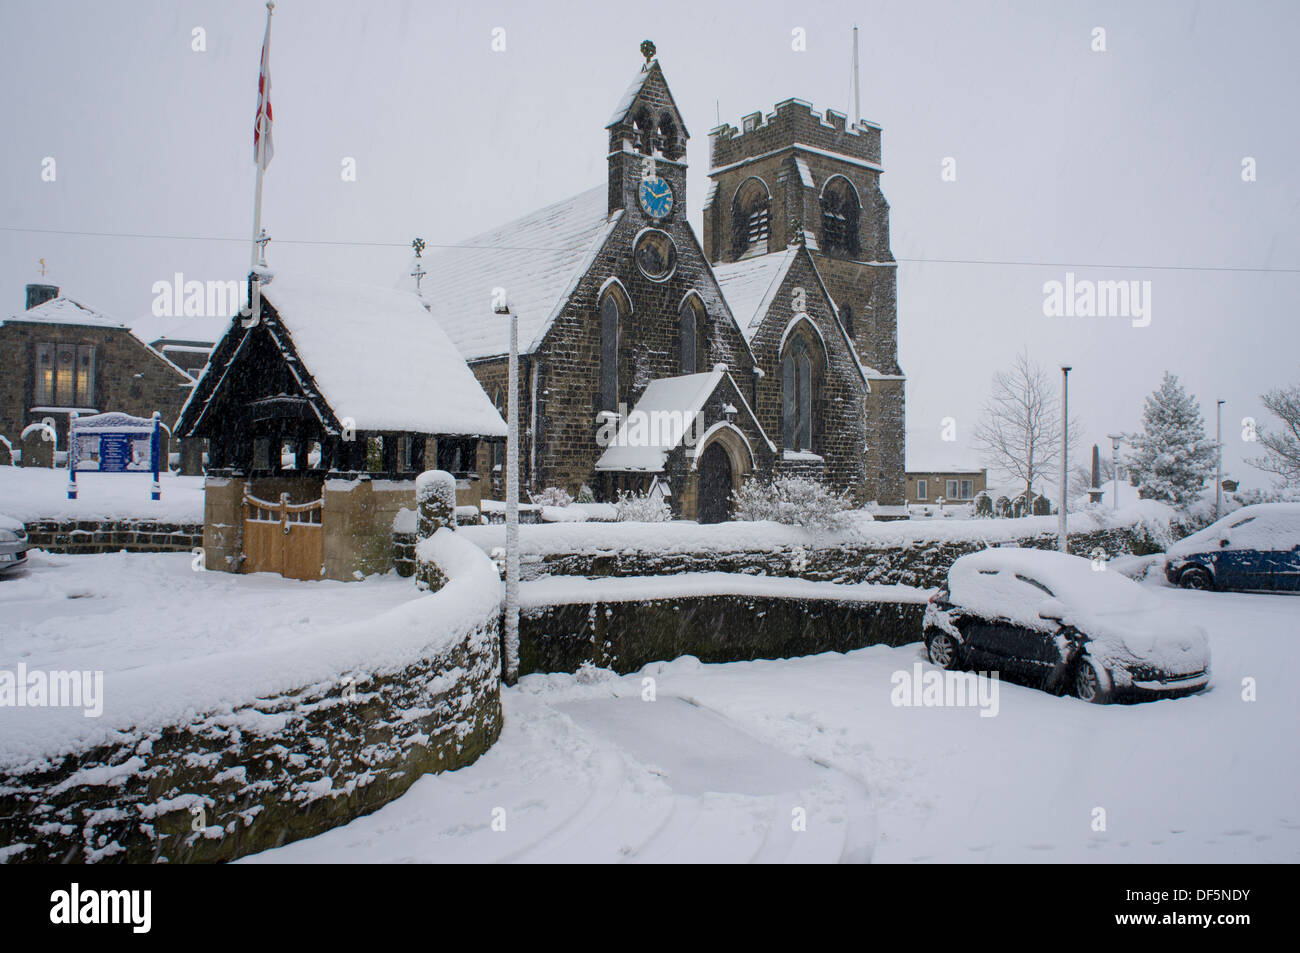 Scène d'hiver froid et gris avec la neige qui tombe sur l'église Saint-Jean (bâtiments et voitures couvert de couche blanche) - Baildon, West Yorkshire, Angleterre, Royaume-Uni. Banque D'Images